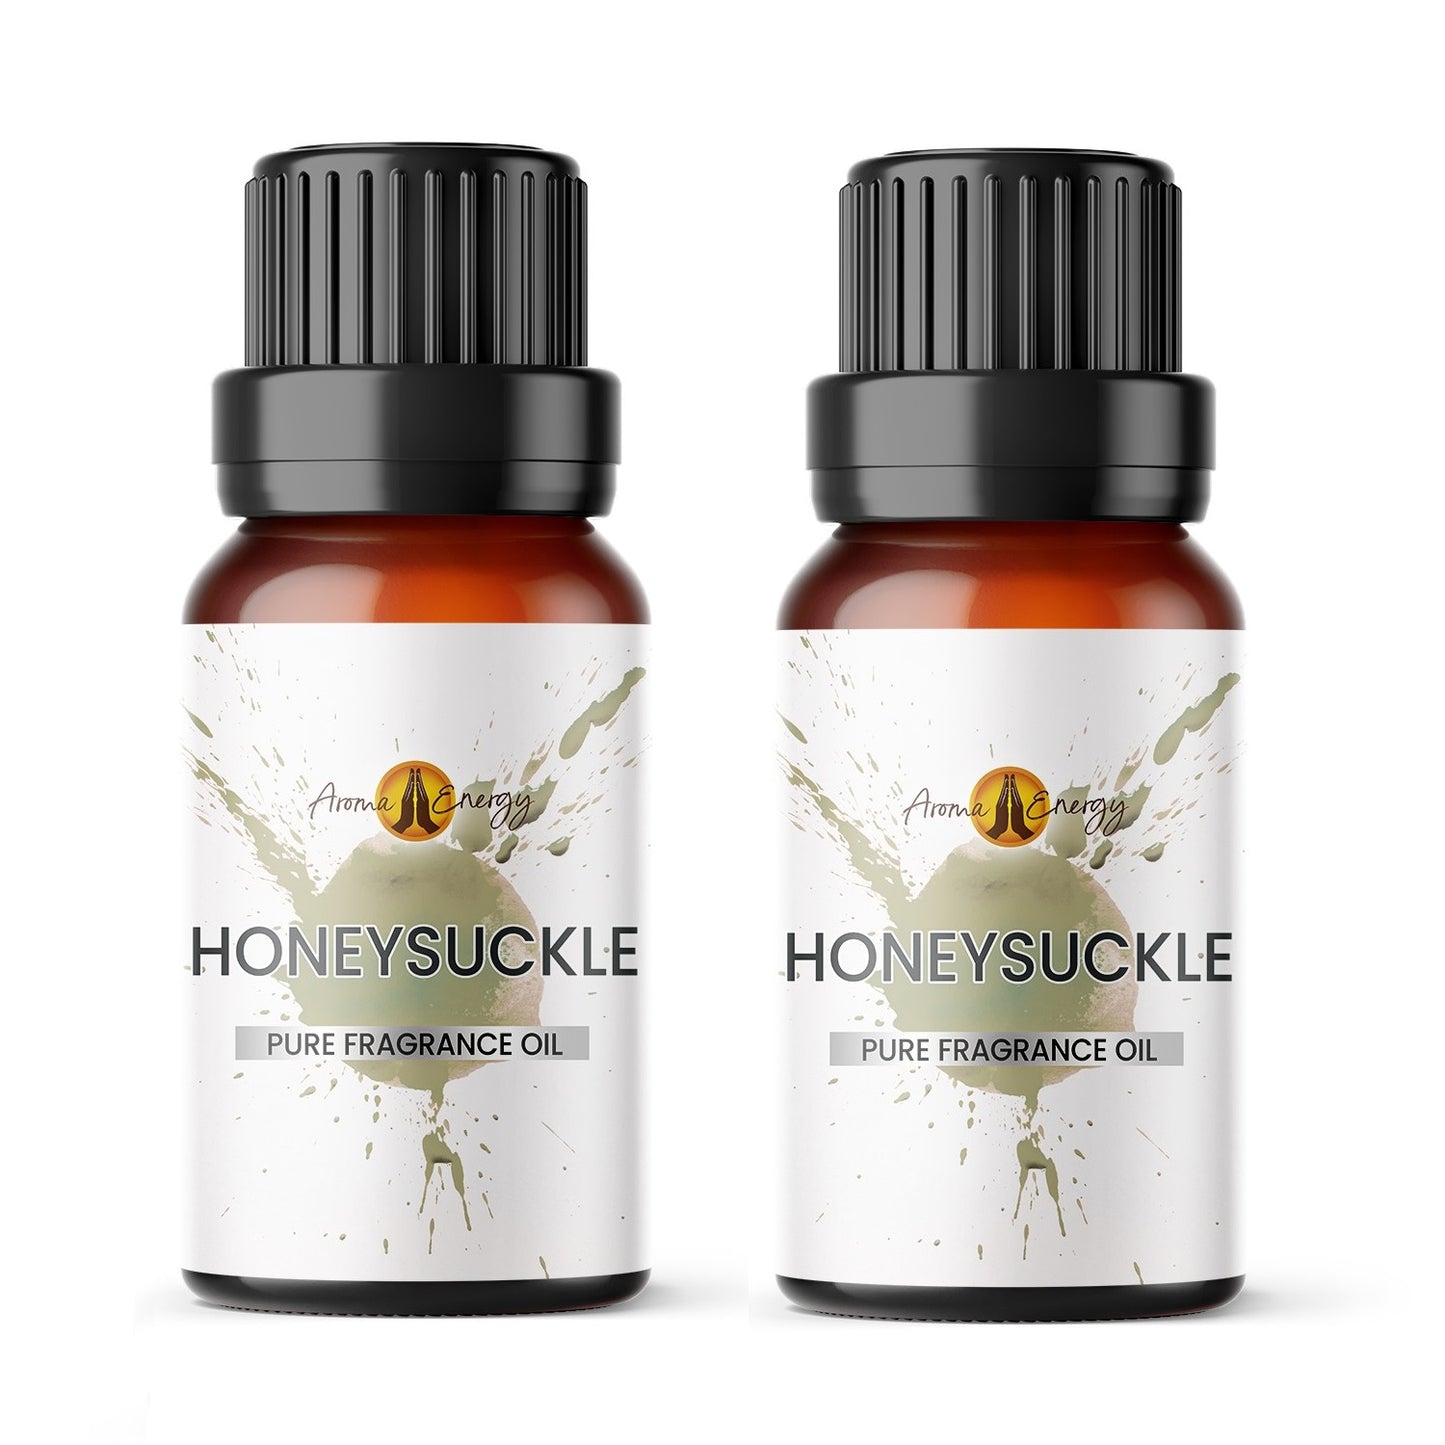 Honeysuckle Fragrance Oil - Aroma Energy